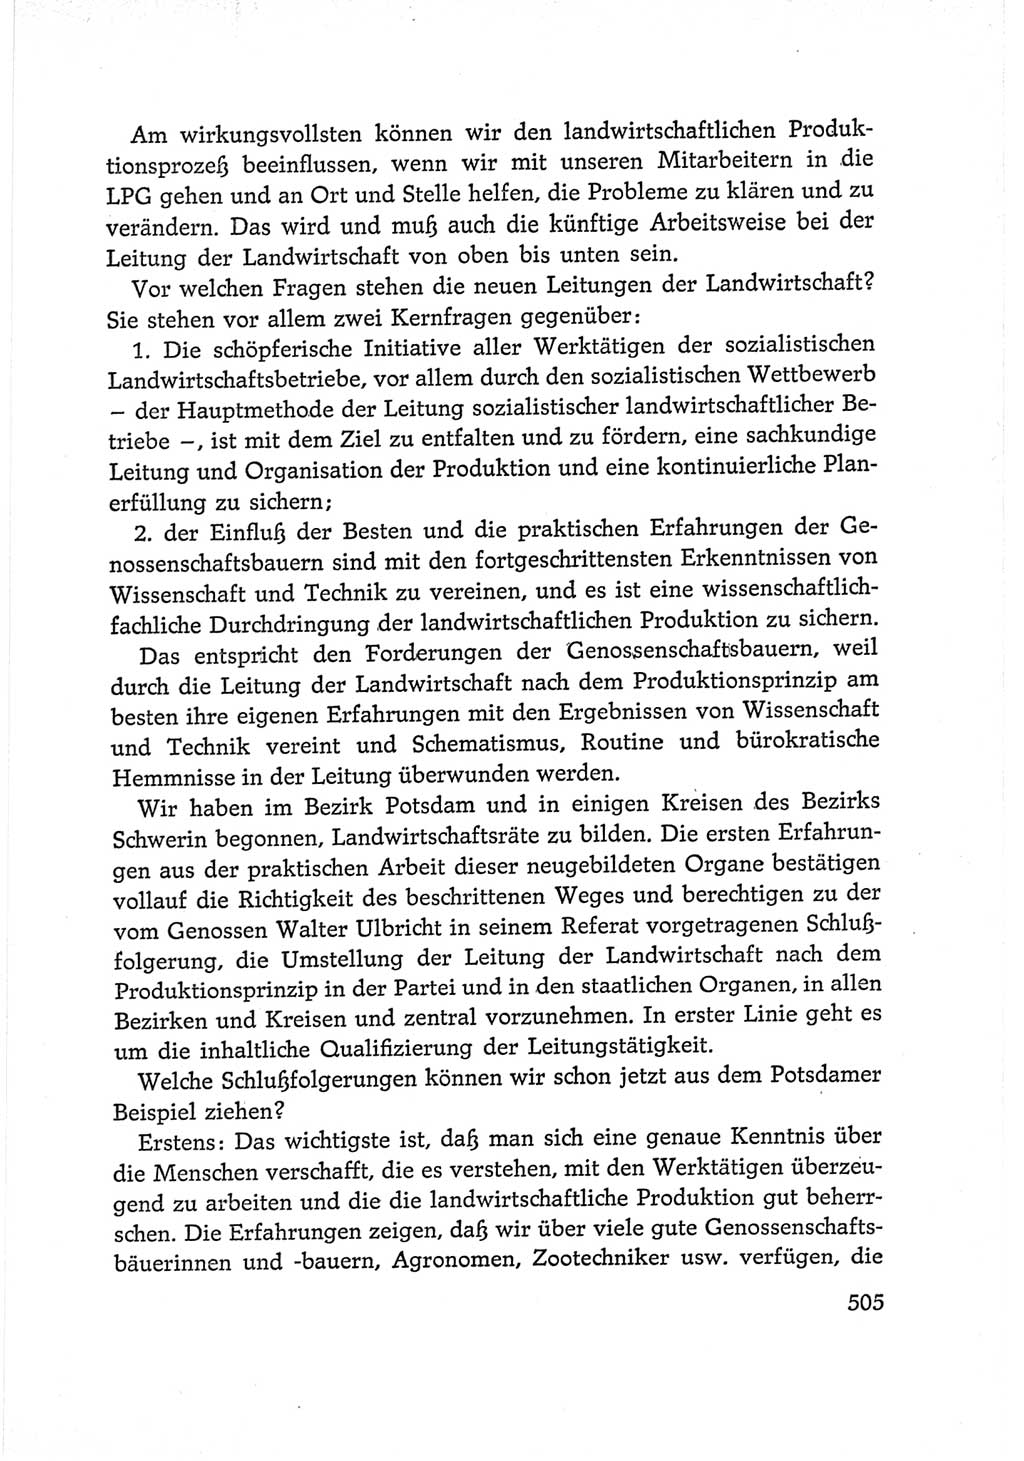 Protokoll der Verhandlungen des Ⅵ. Parteitages der Sozialistischen Einheitspartei Deutschlands (SED) [Deutsche Demokratische Republik (DDR)] 1963, Band Ⅰ, Seite 505 (Prot. Verh. Ⅵ. PT SED DDR 1963, Bd. Ⅰ, S. 505)